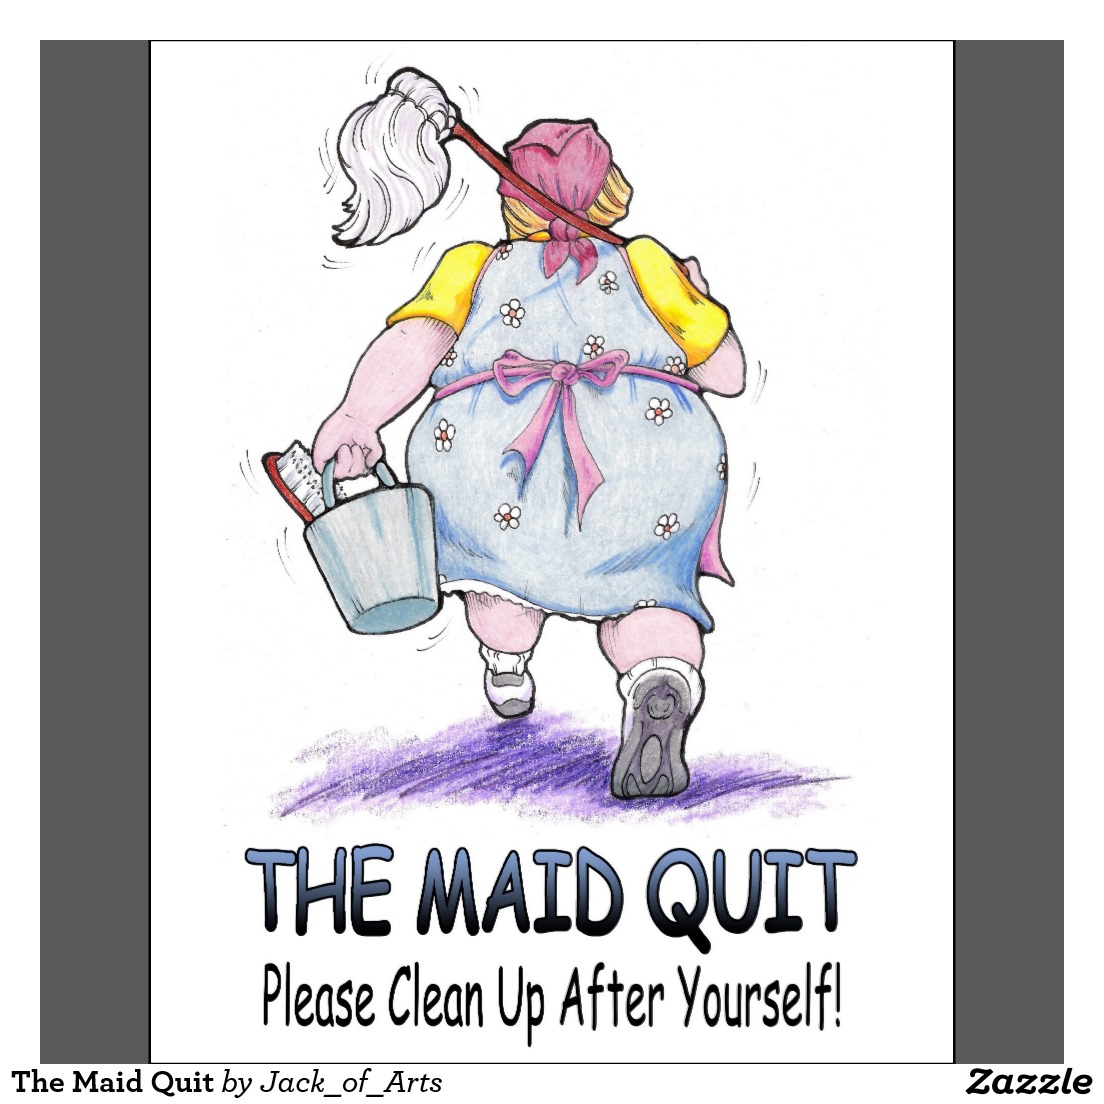 the_maid_quit_poster-r495456f5e5144d5eb29e4af3e17c2cf4_i3cxh_8byvr_1024